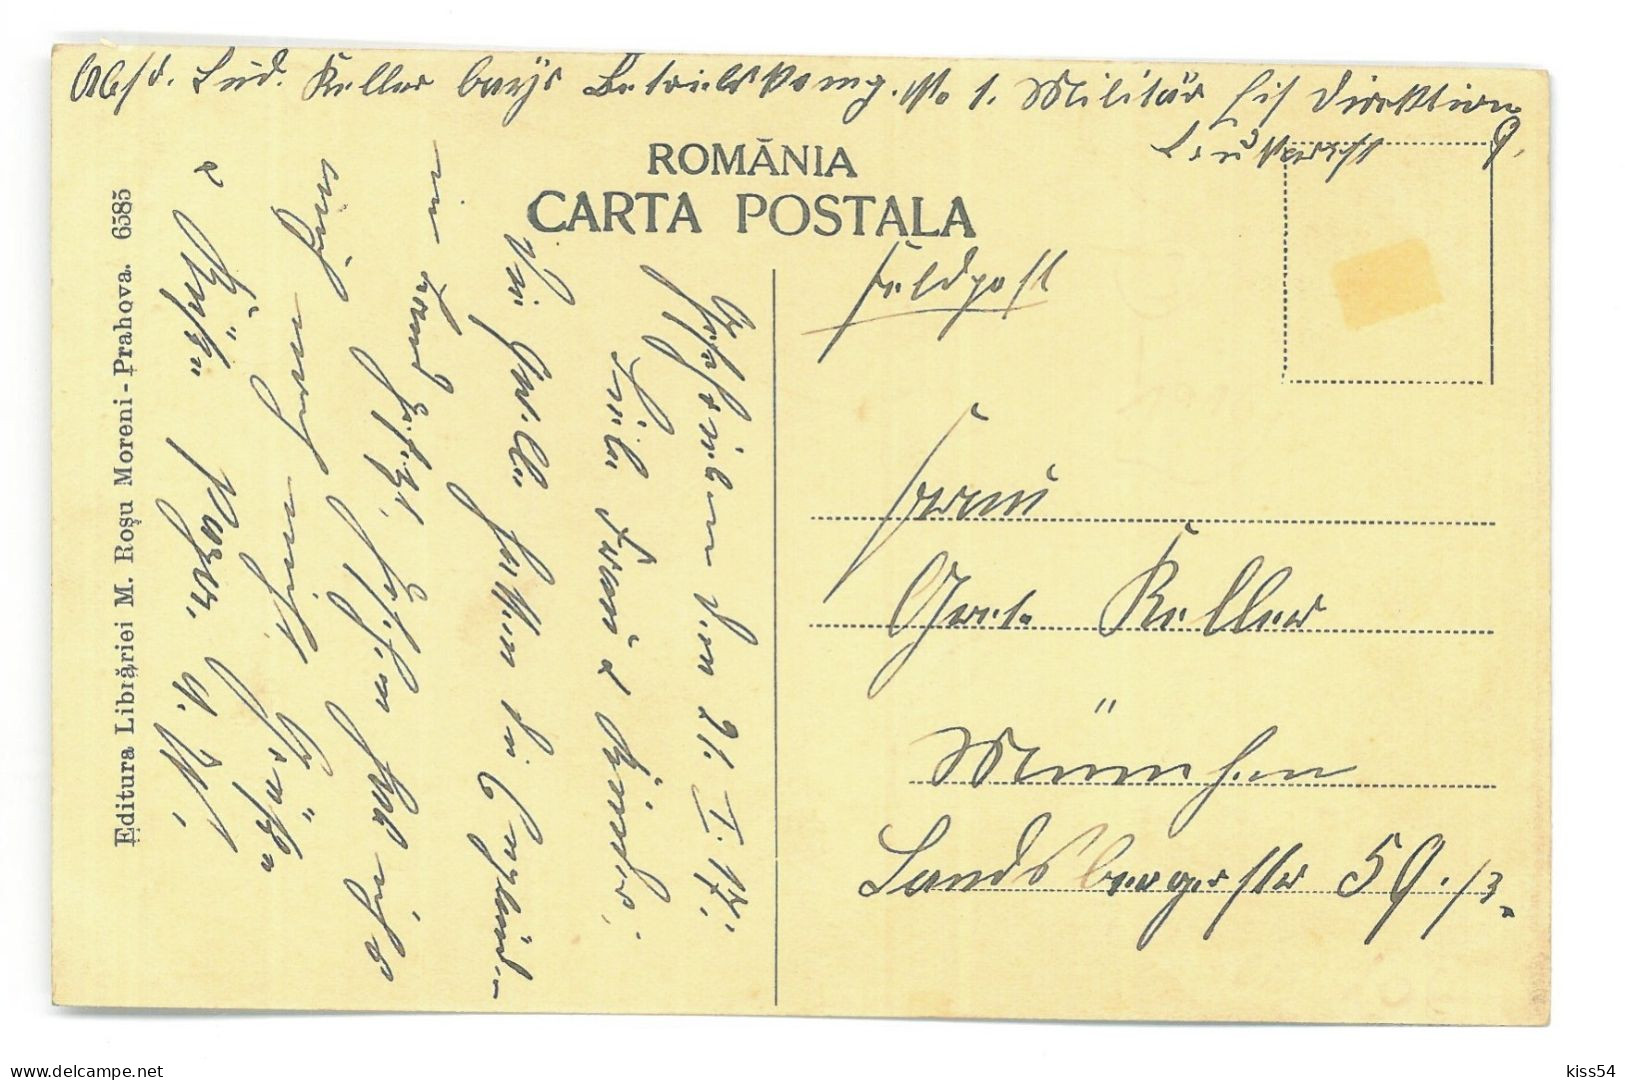 RO 86 - 25421 MORENI, Prahova, Eruptia Unei Sonde, Romania - Old Postcard - Used - 1917 - Romania